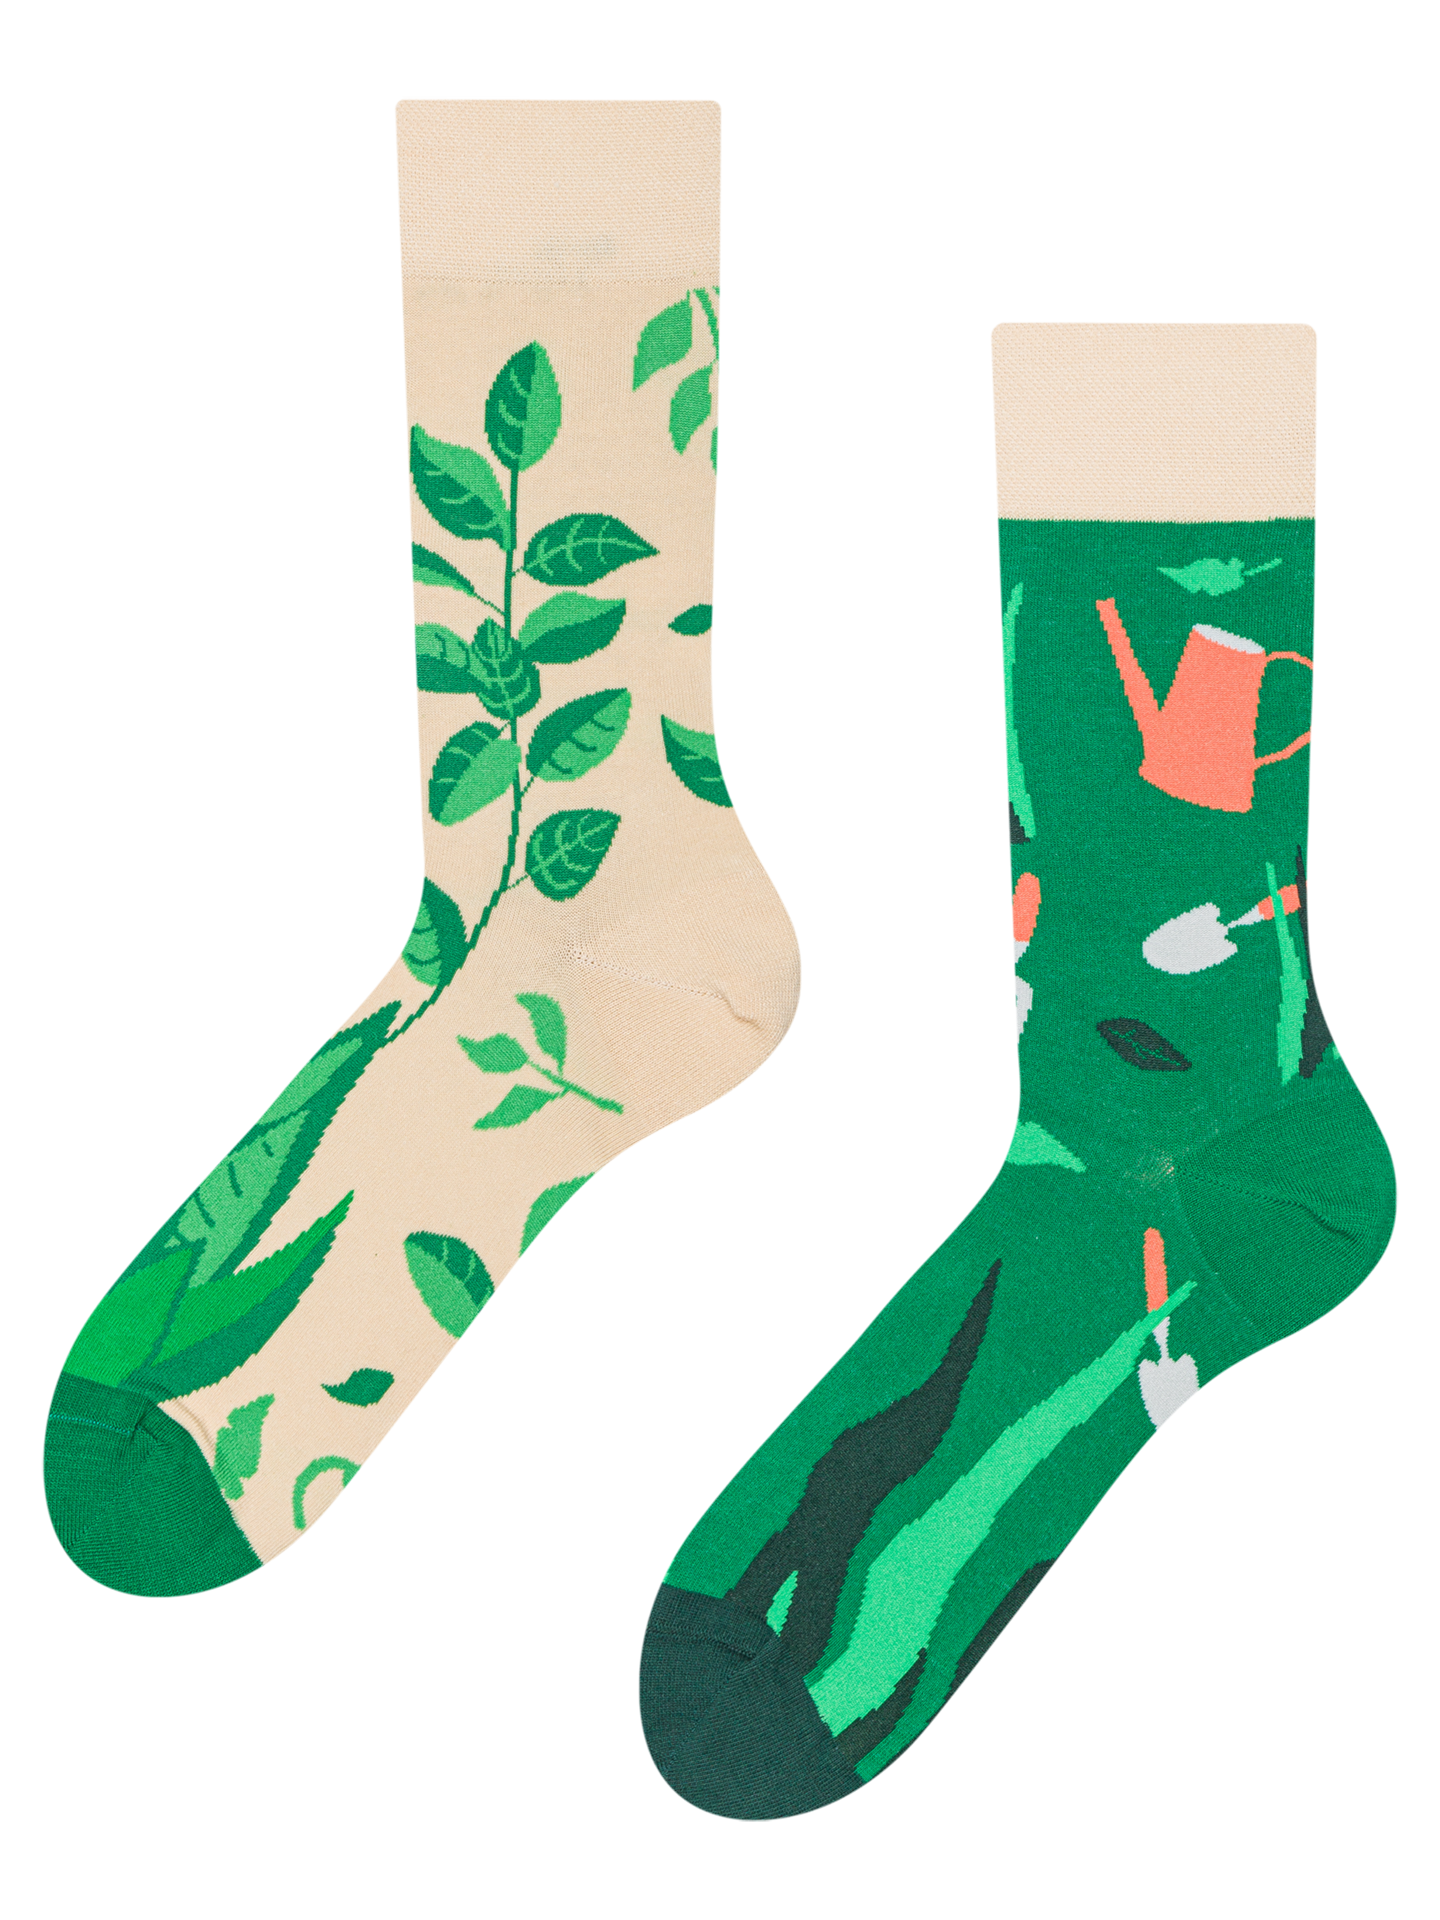 Regular Socks In the Garden